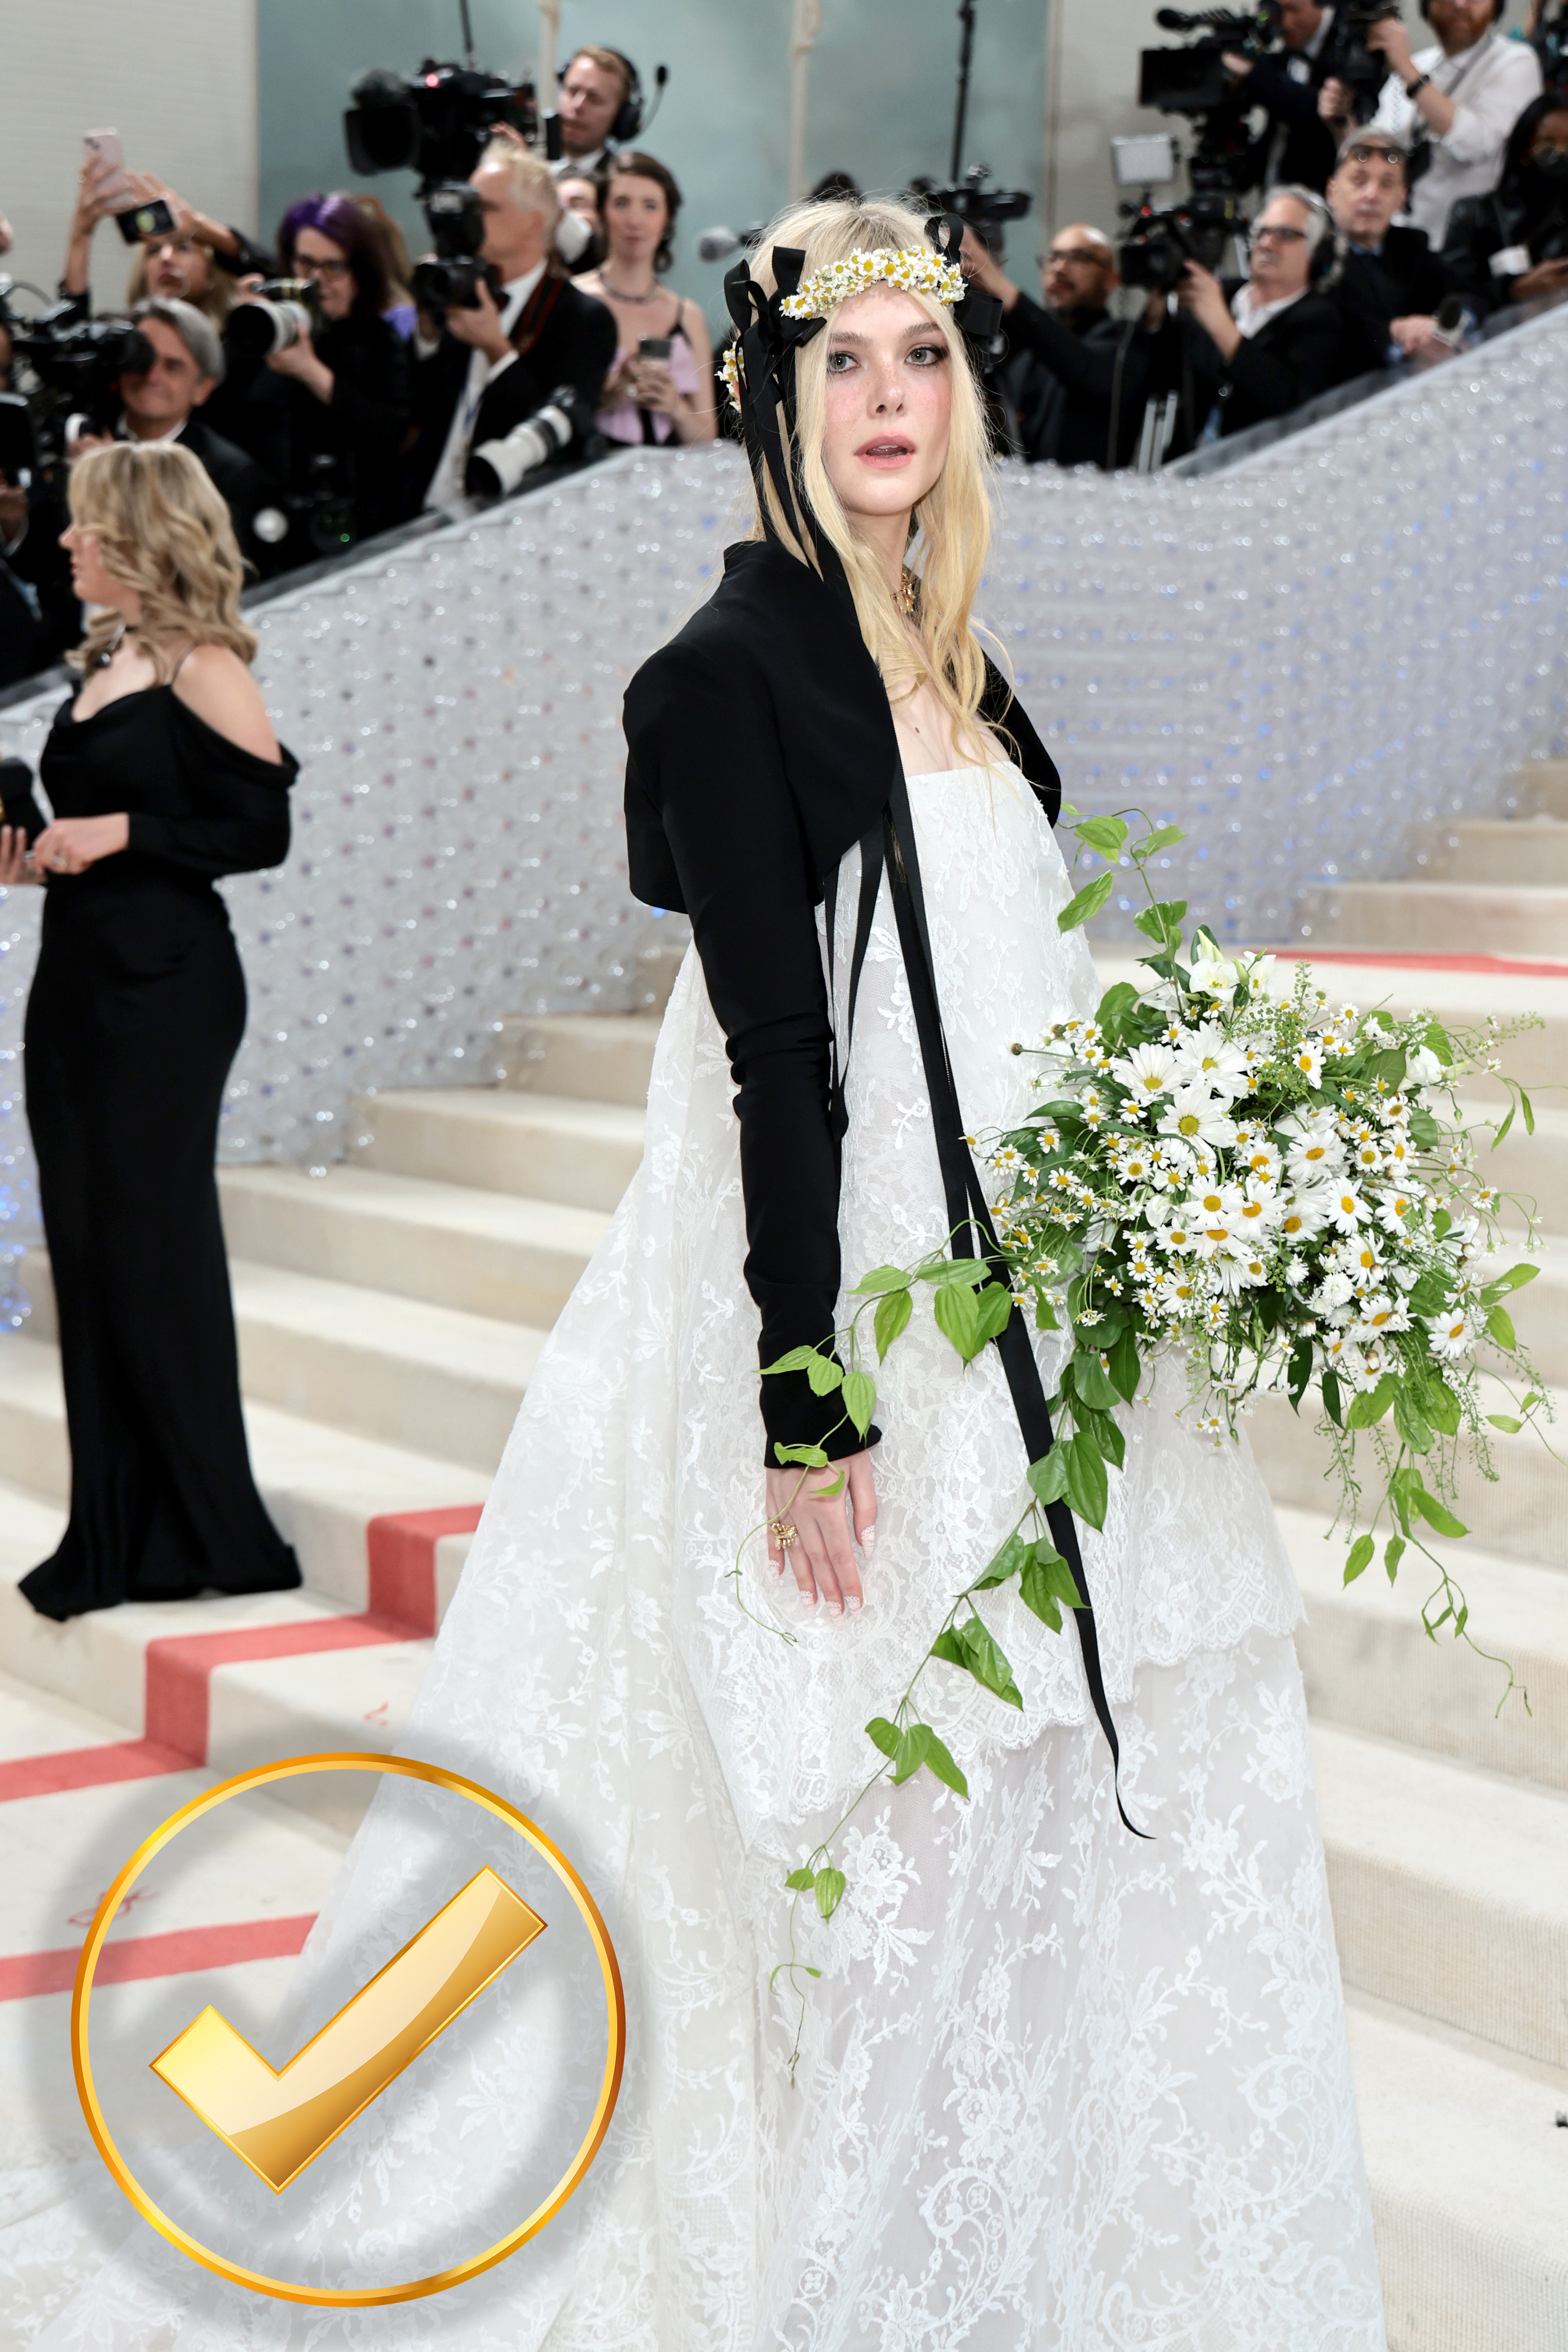 Elle Fanning eligió por un estilo de hada de madera, según ella misma comentó, el cual estuvo diseñado por Andreas Kronthaler para Vivienne Westwood y fue parte de su primer desfile de alta costura de Chanel de 2011